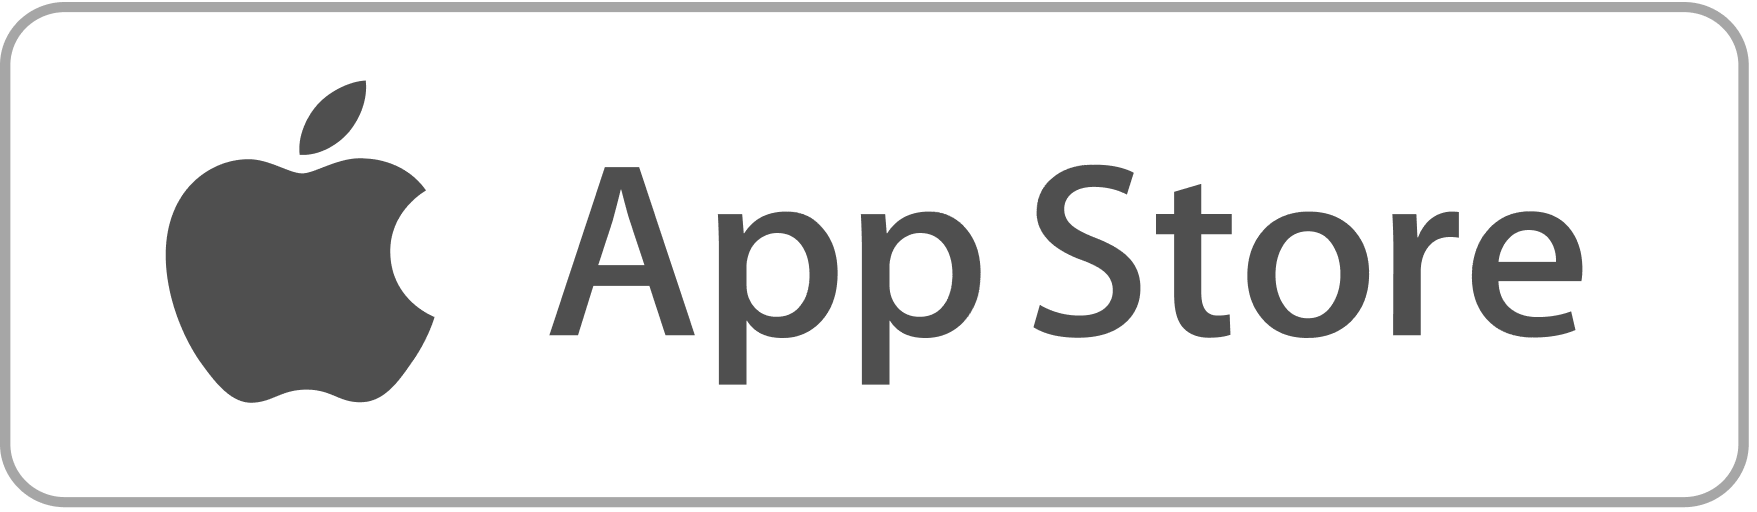 Иконка app Store. Apple Store логотип. Иконка приложения Apple Store. Значок доступно в app Store.